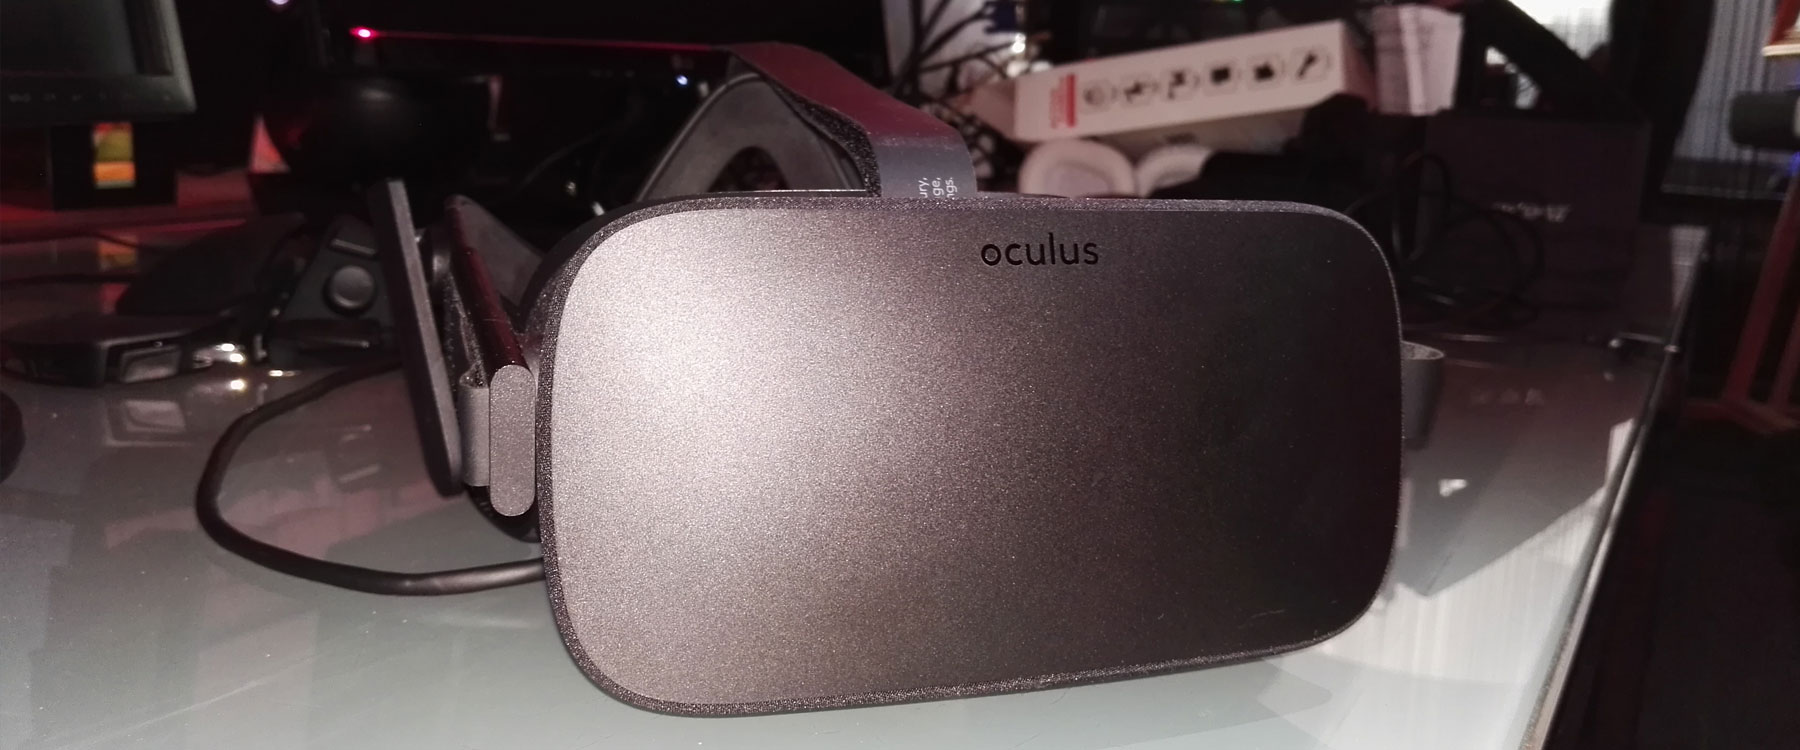 easysee-oculus